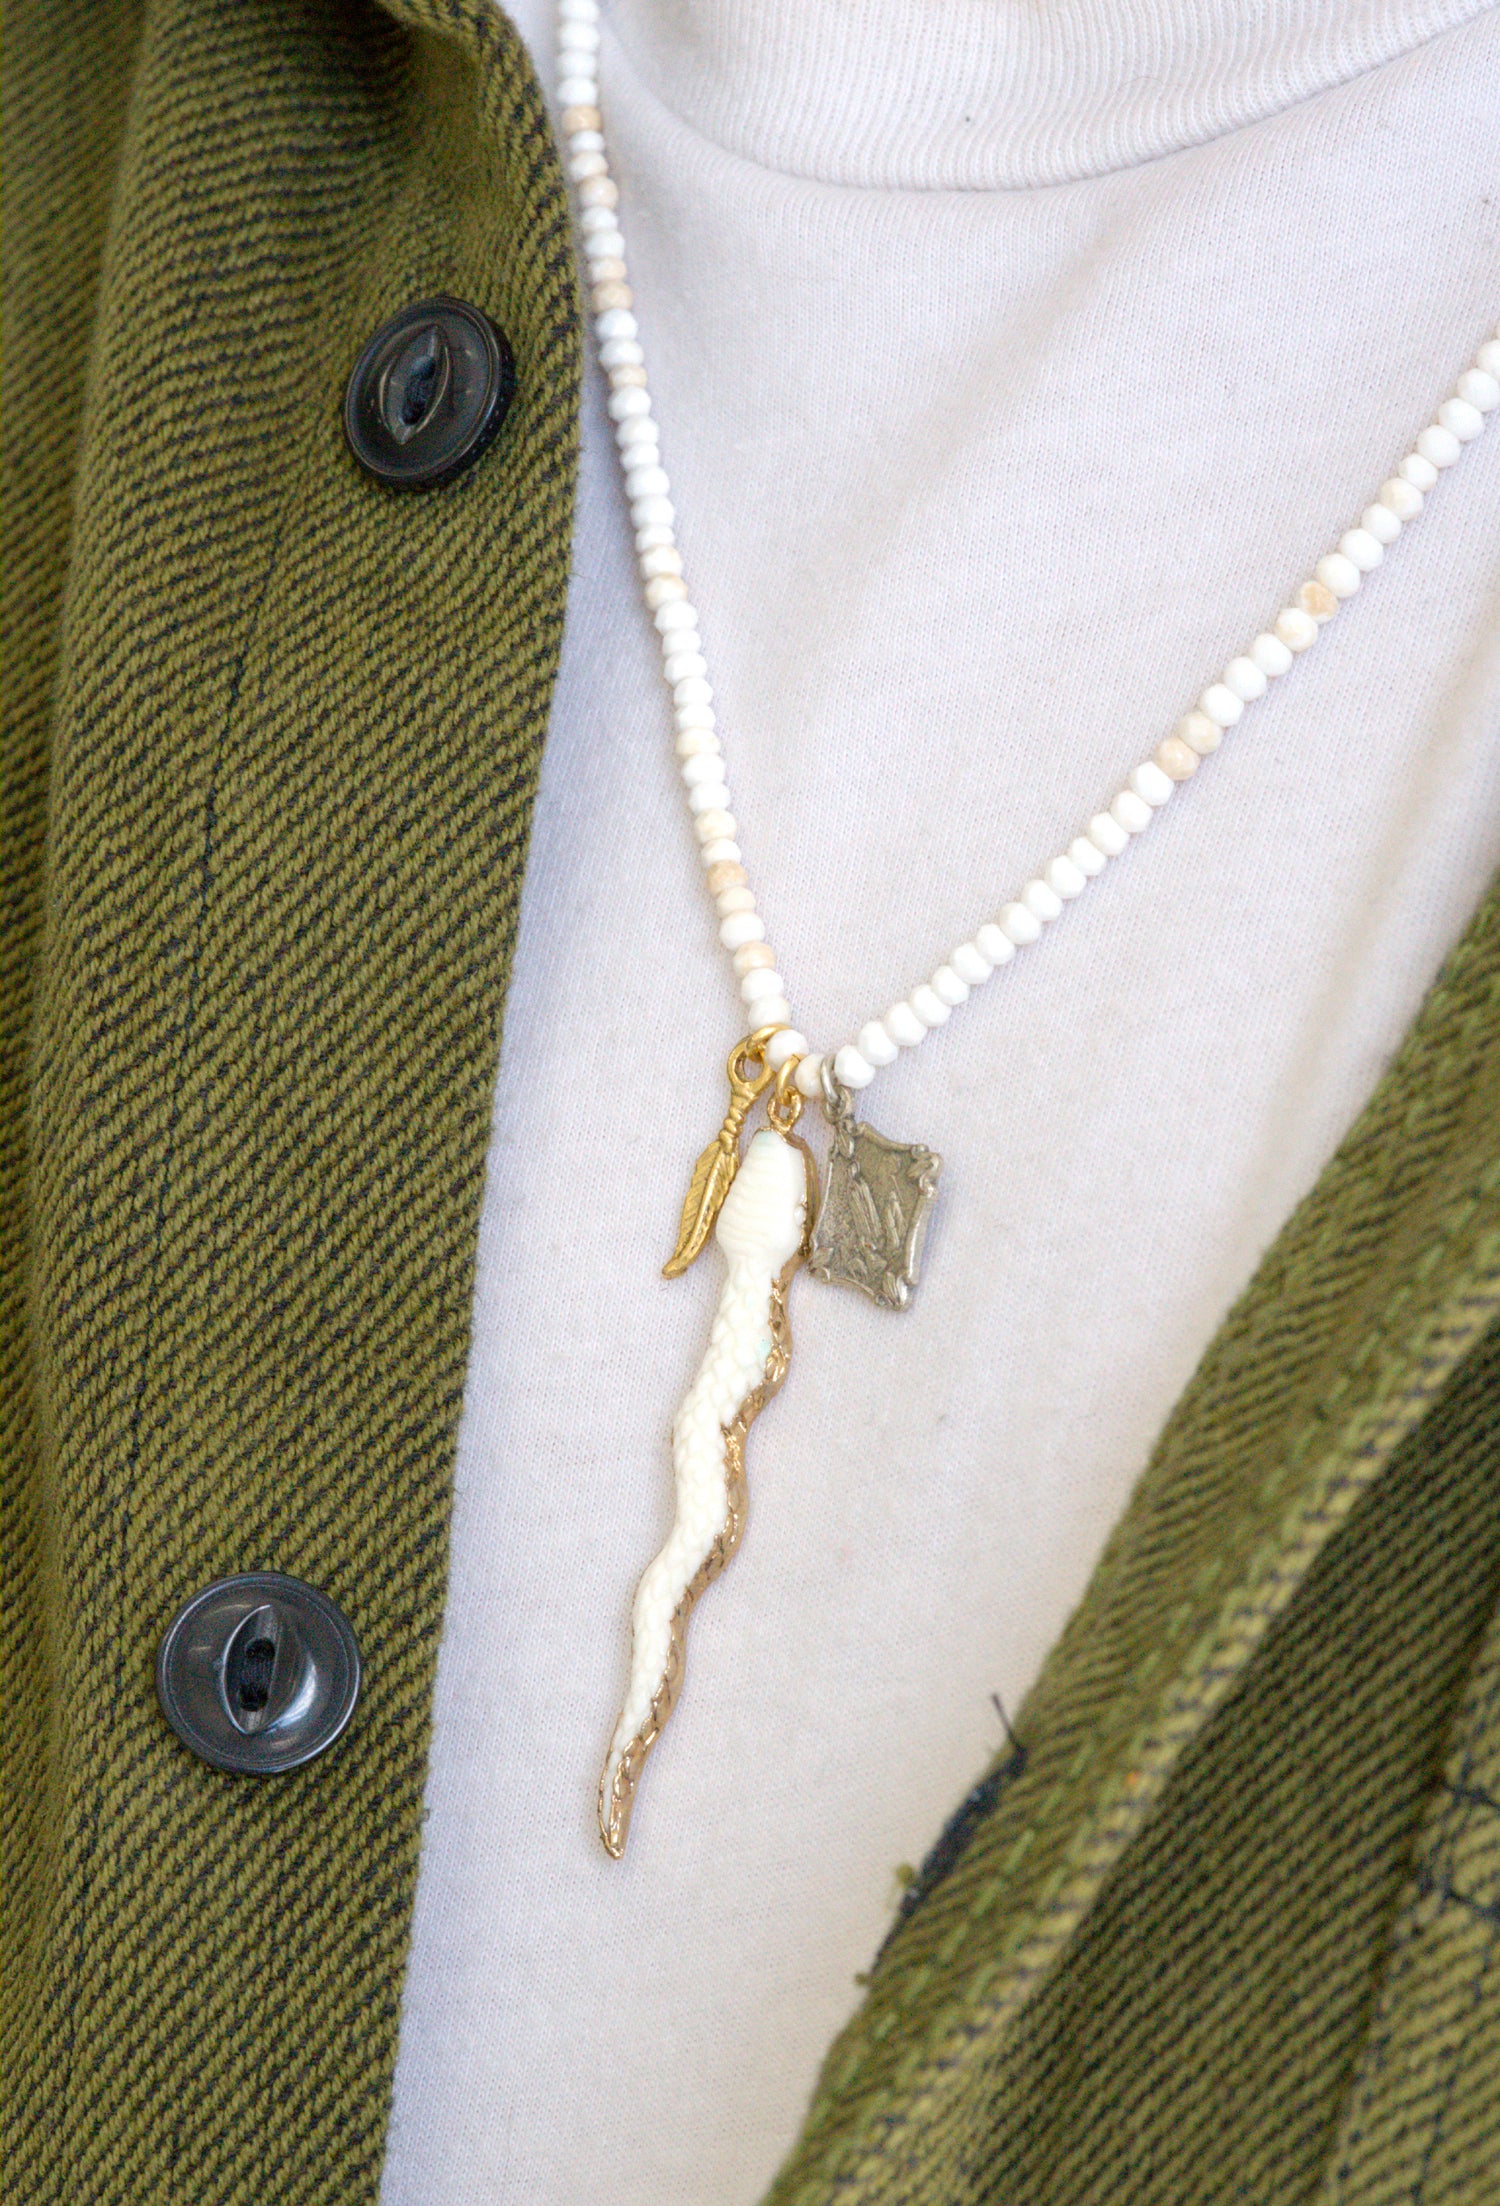 Carved snake pendant necklace by Jenny Dayco 8